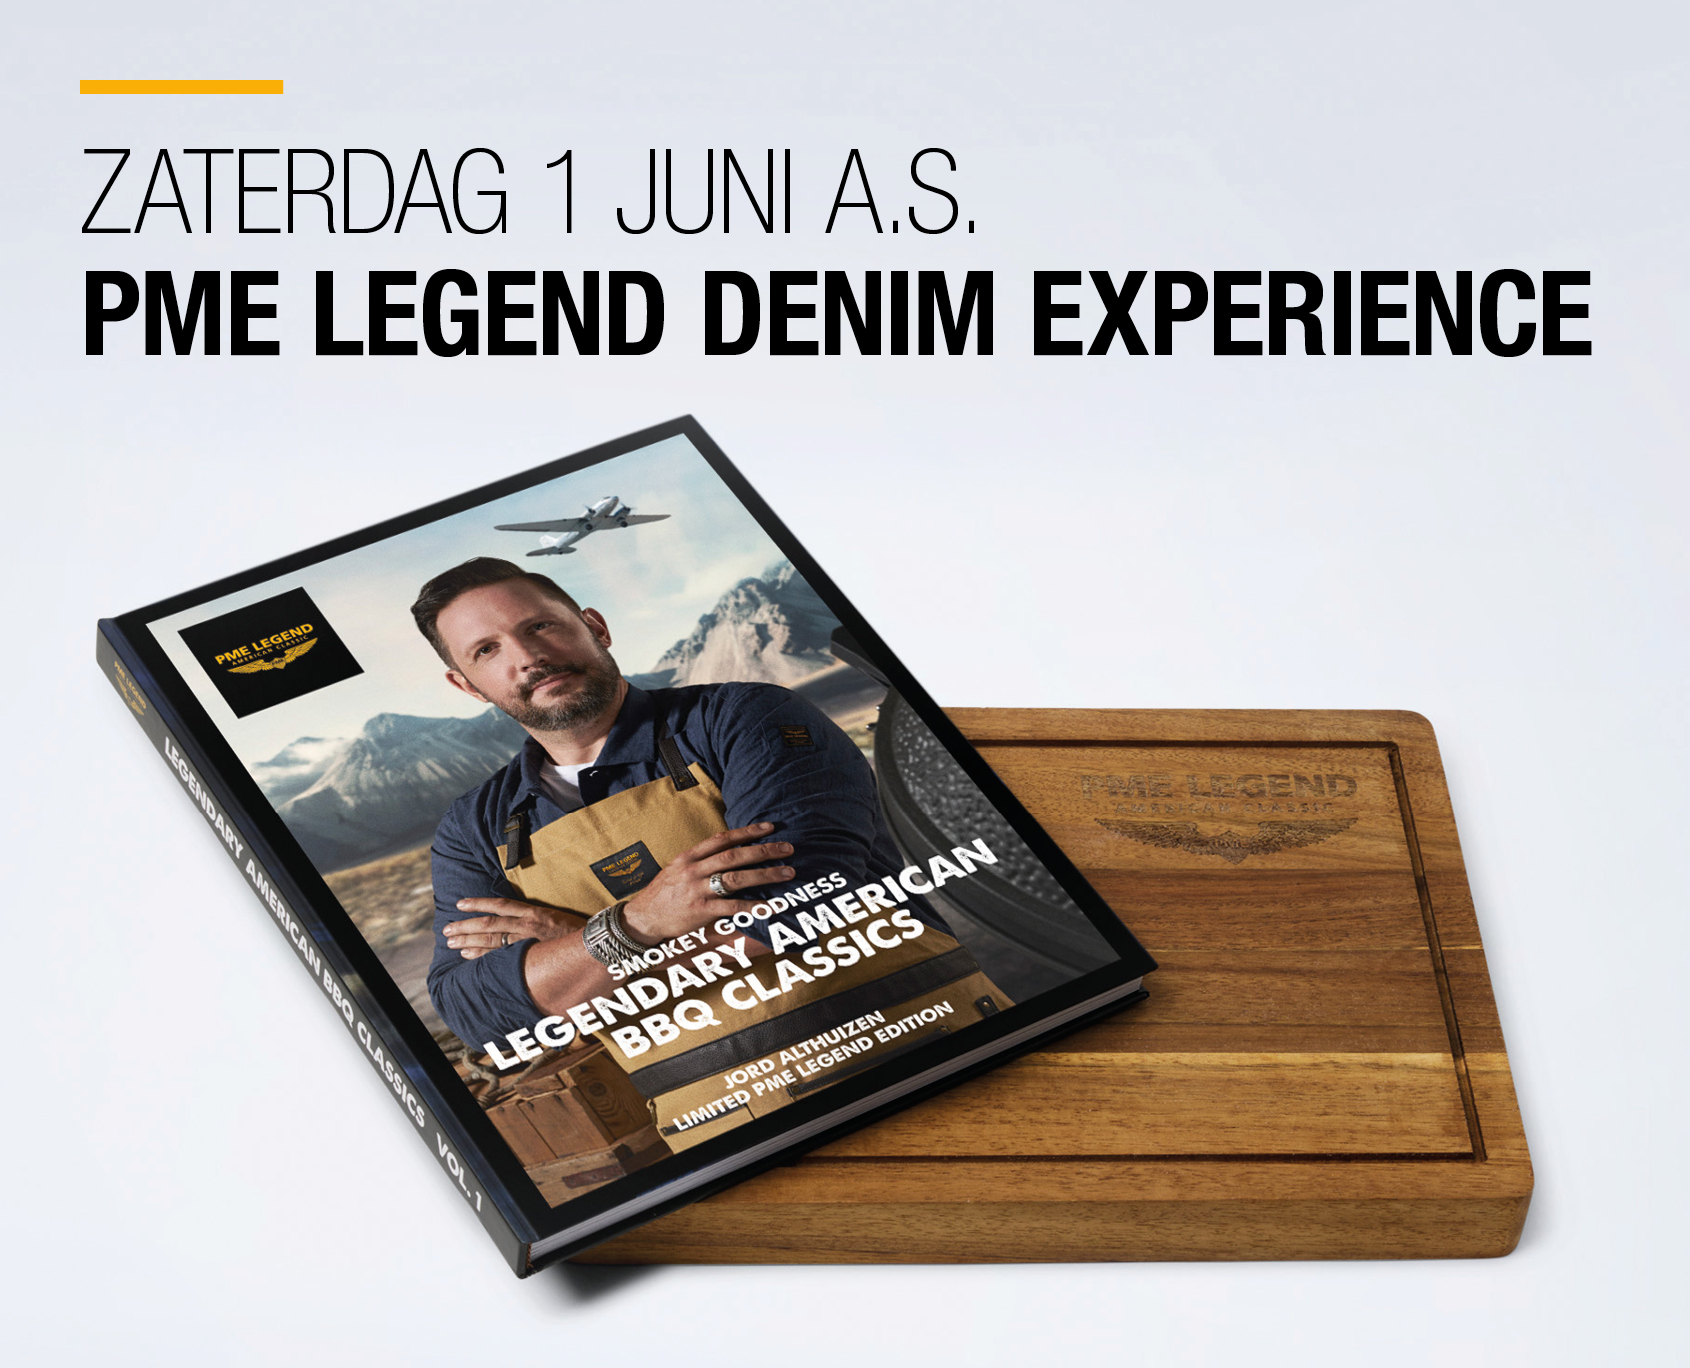 Kom zaterdag naar de PME Legend Denim Experience bij Patrick van Keulen